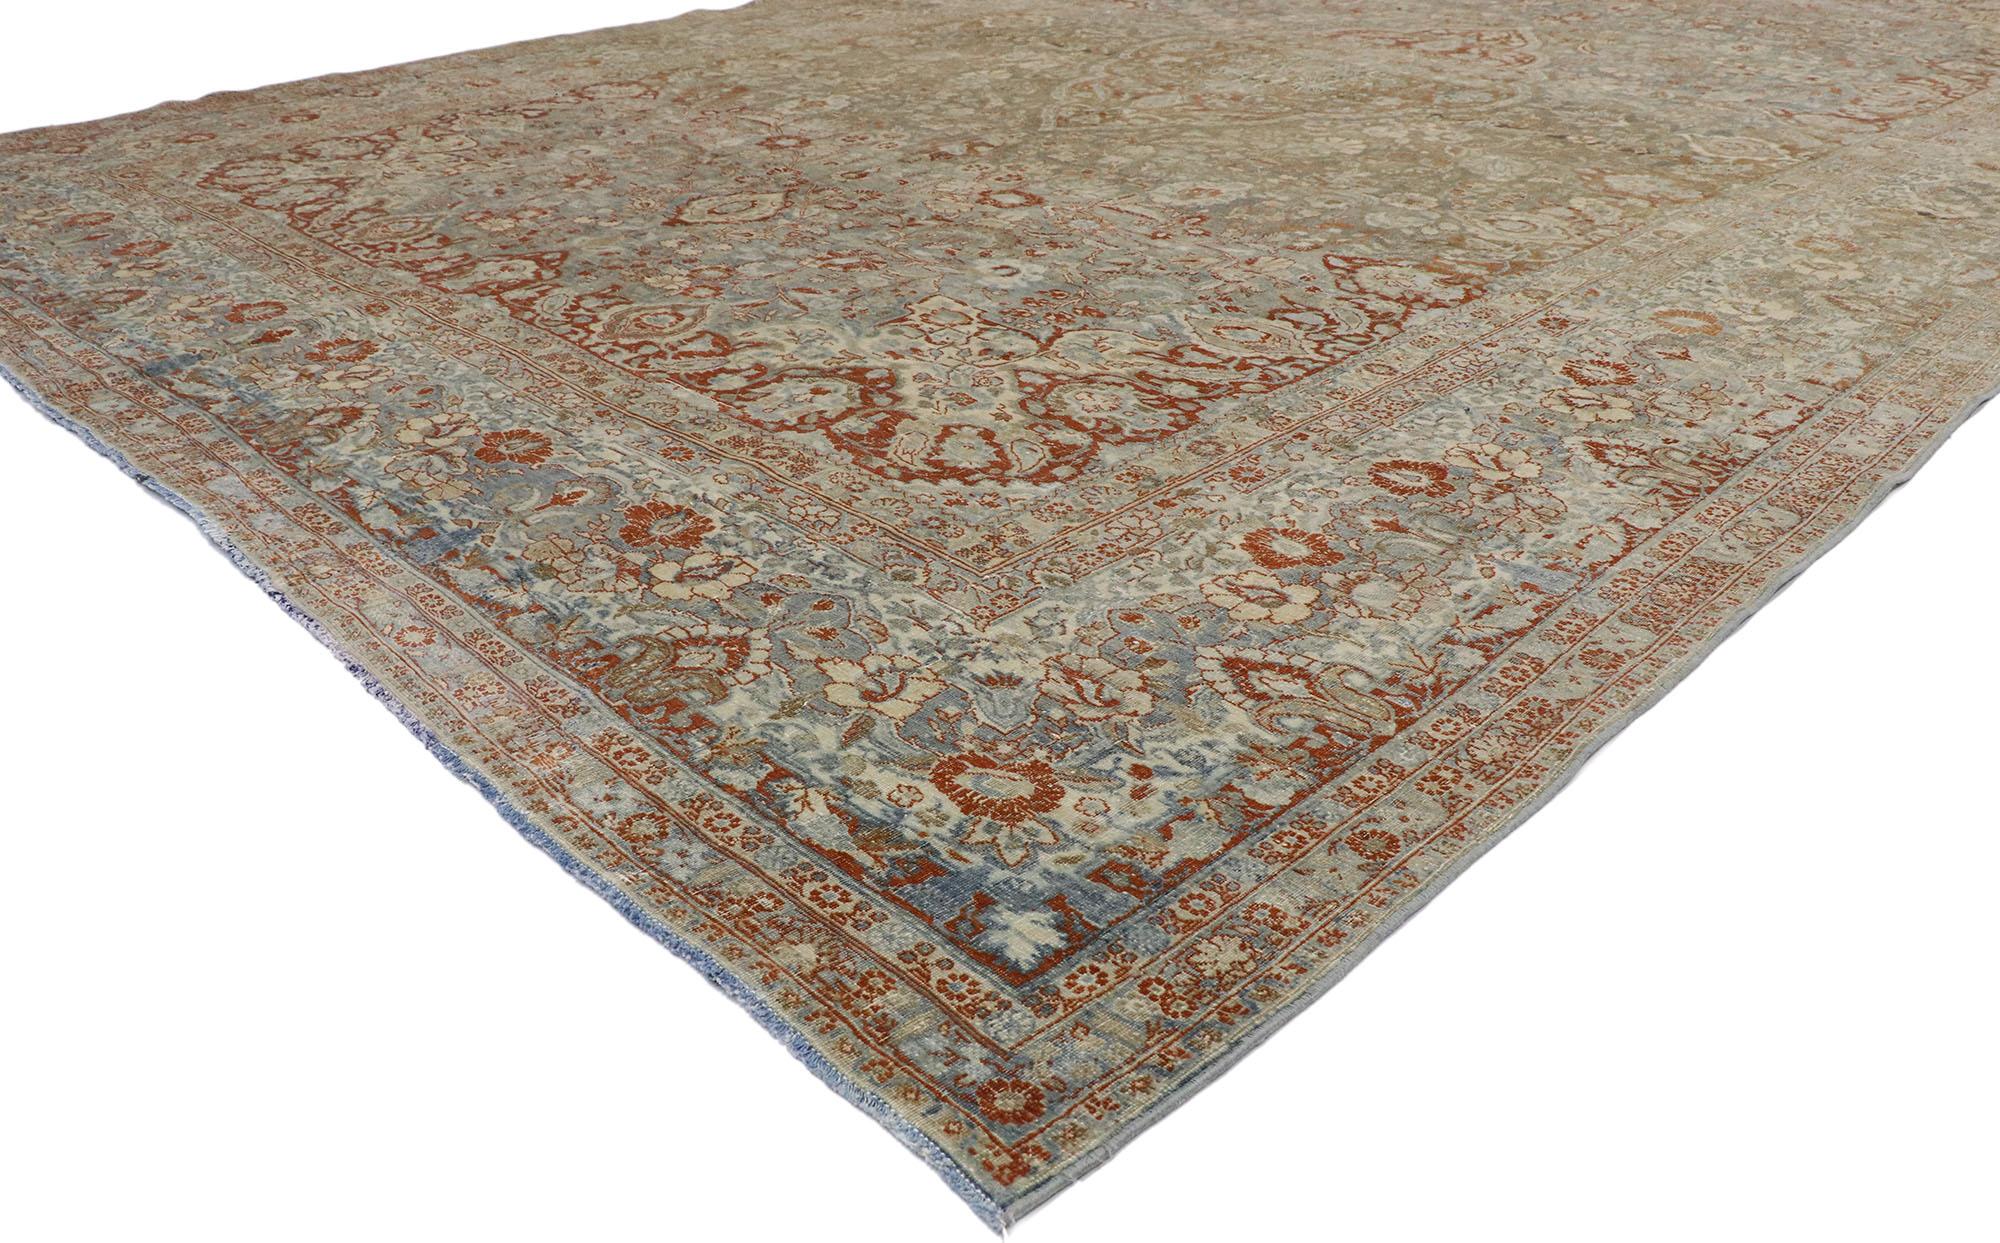 53389, ancien tapis persan Mashad vieilli avec un style artisanal américain moderne et rustique 10'11 x 17'08. Avec son motif botanique intemporel et son apparence amoureusement usée par le temps, ce tapis persan Mashhad ancien en laine nouée à la